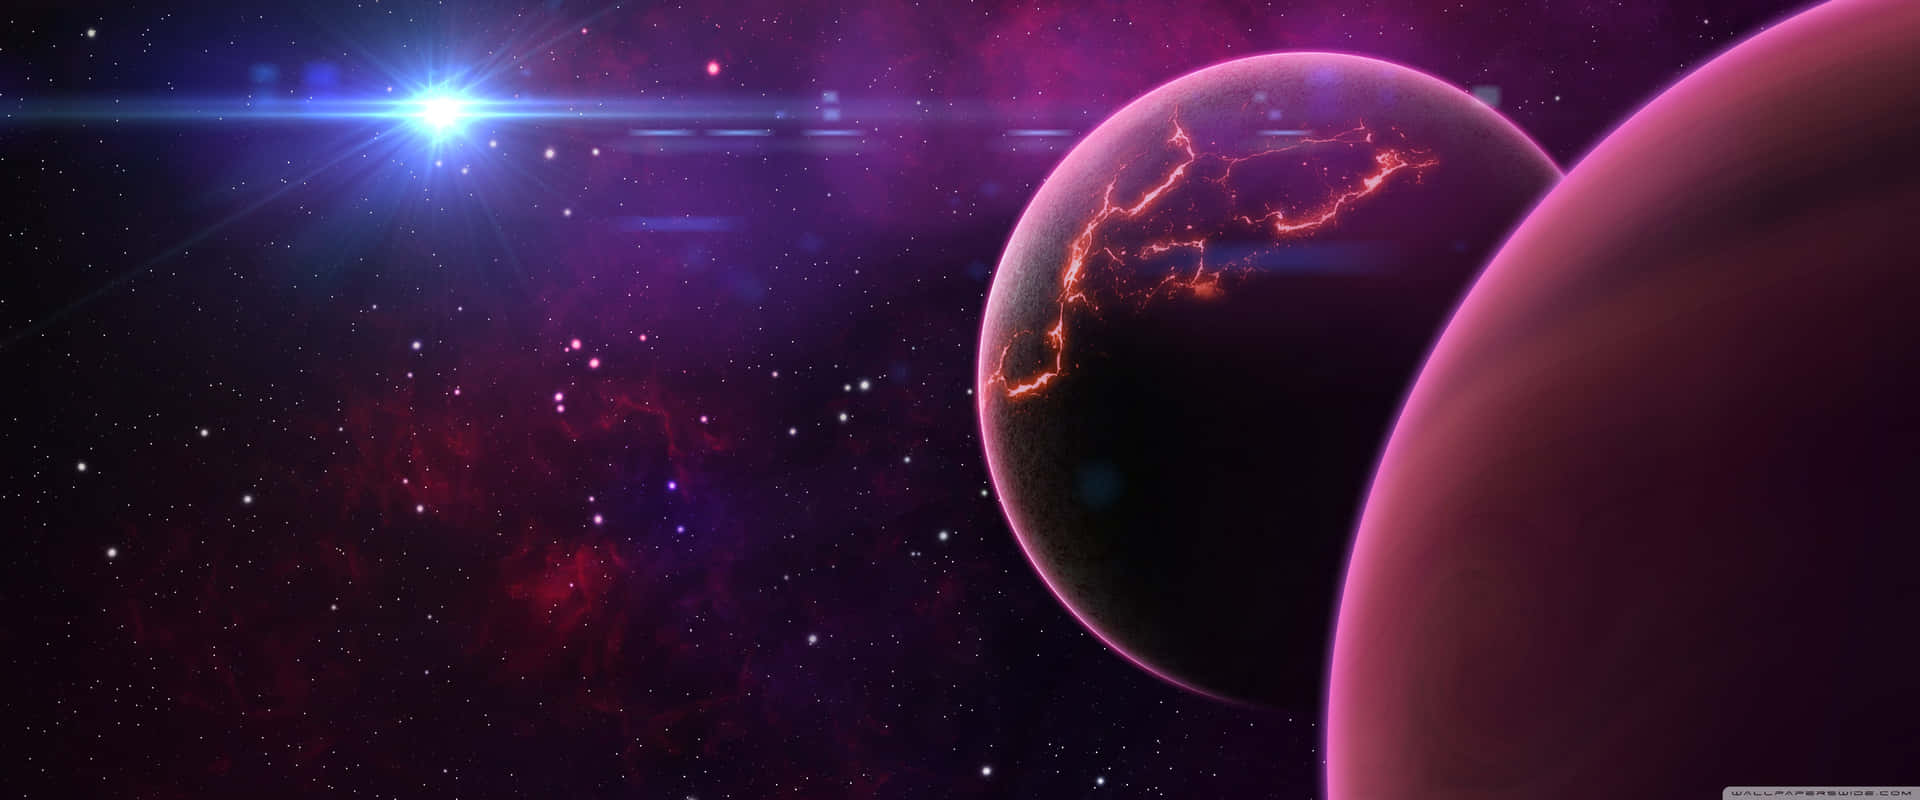 Umacena Espacial Com Dois Planetas E Estrelas. Papel de Parede